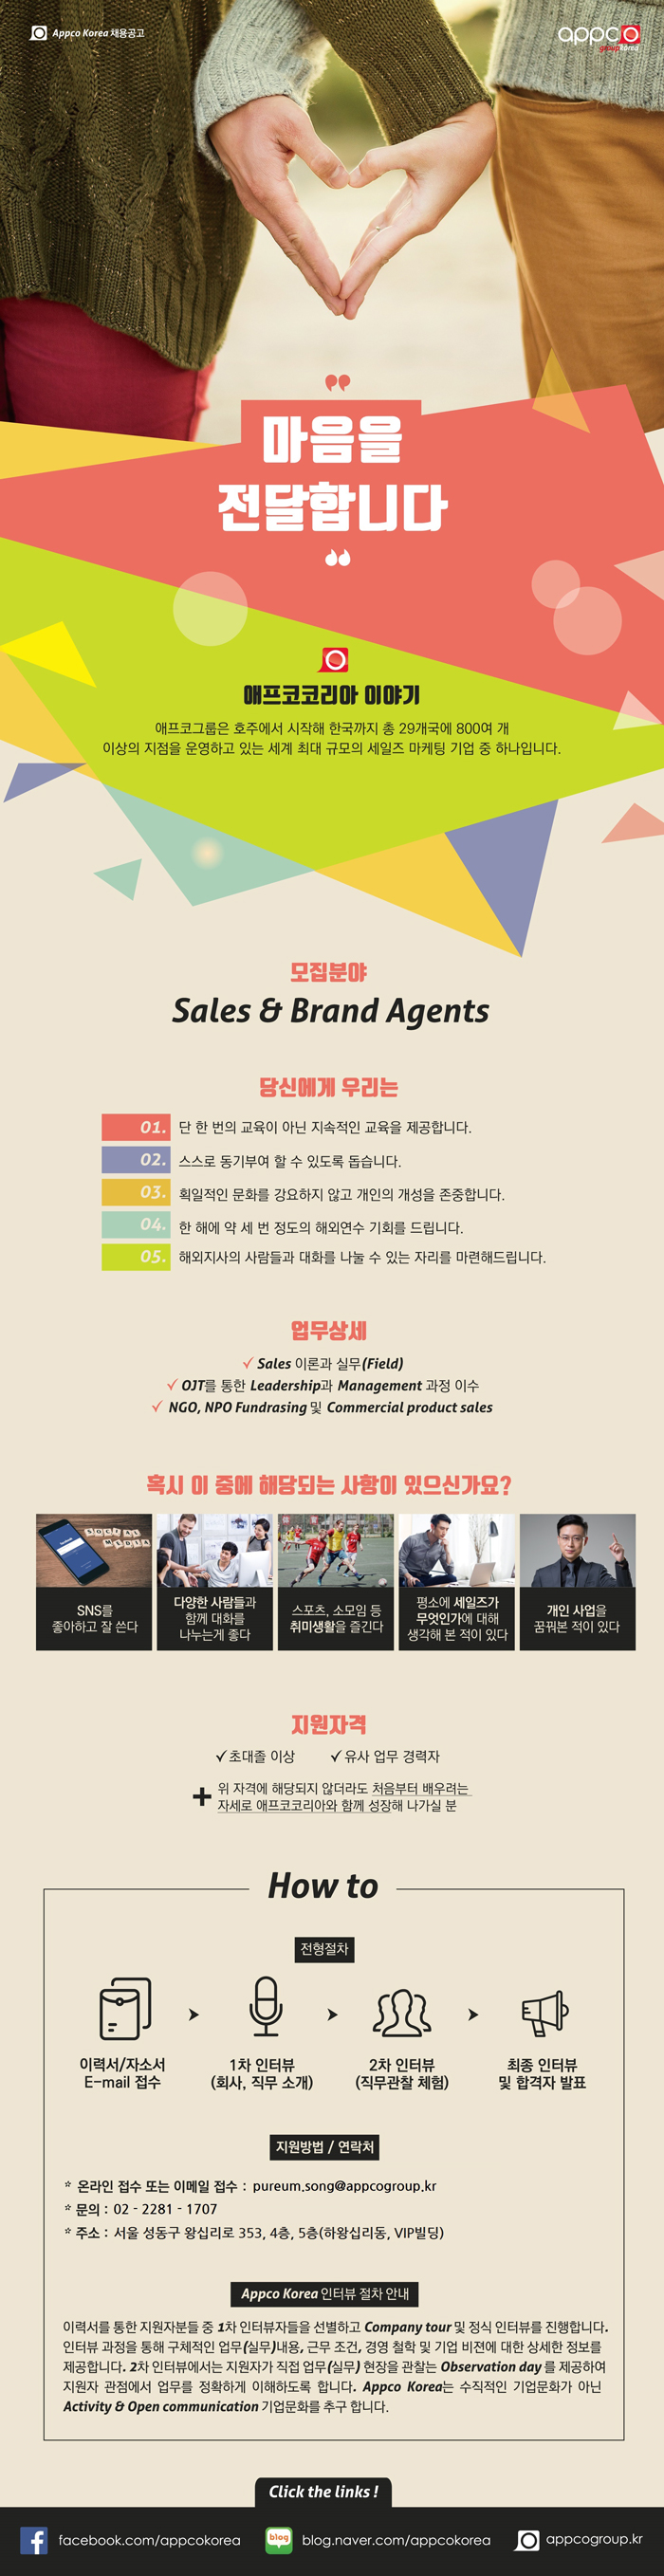 [외국계/왕십리지점] APPCO KOREA Sales & Branding Agents 모집